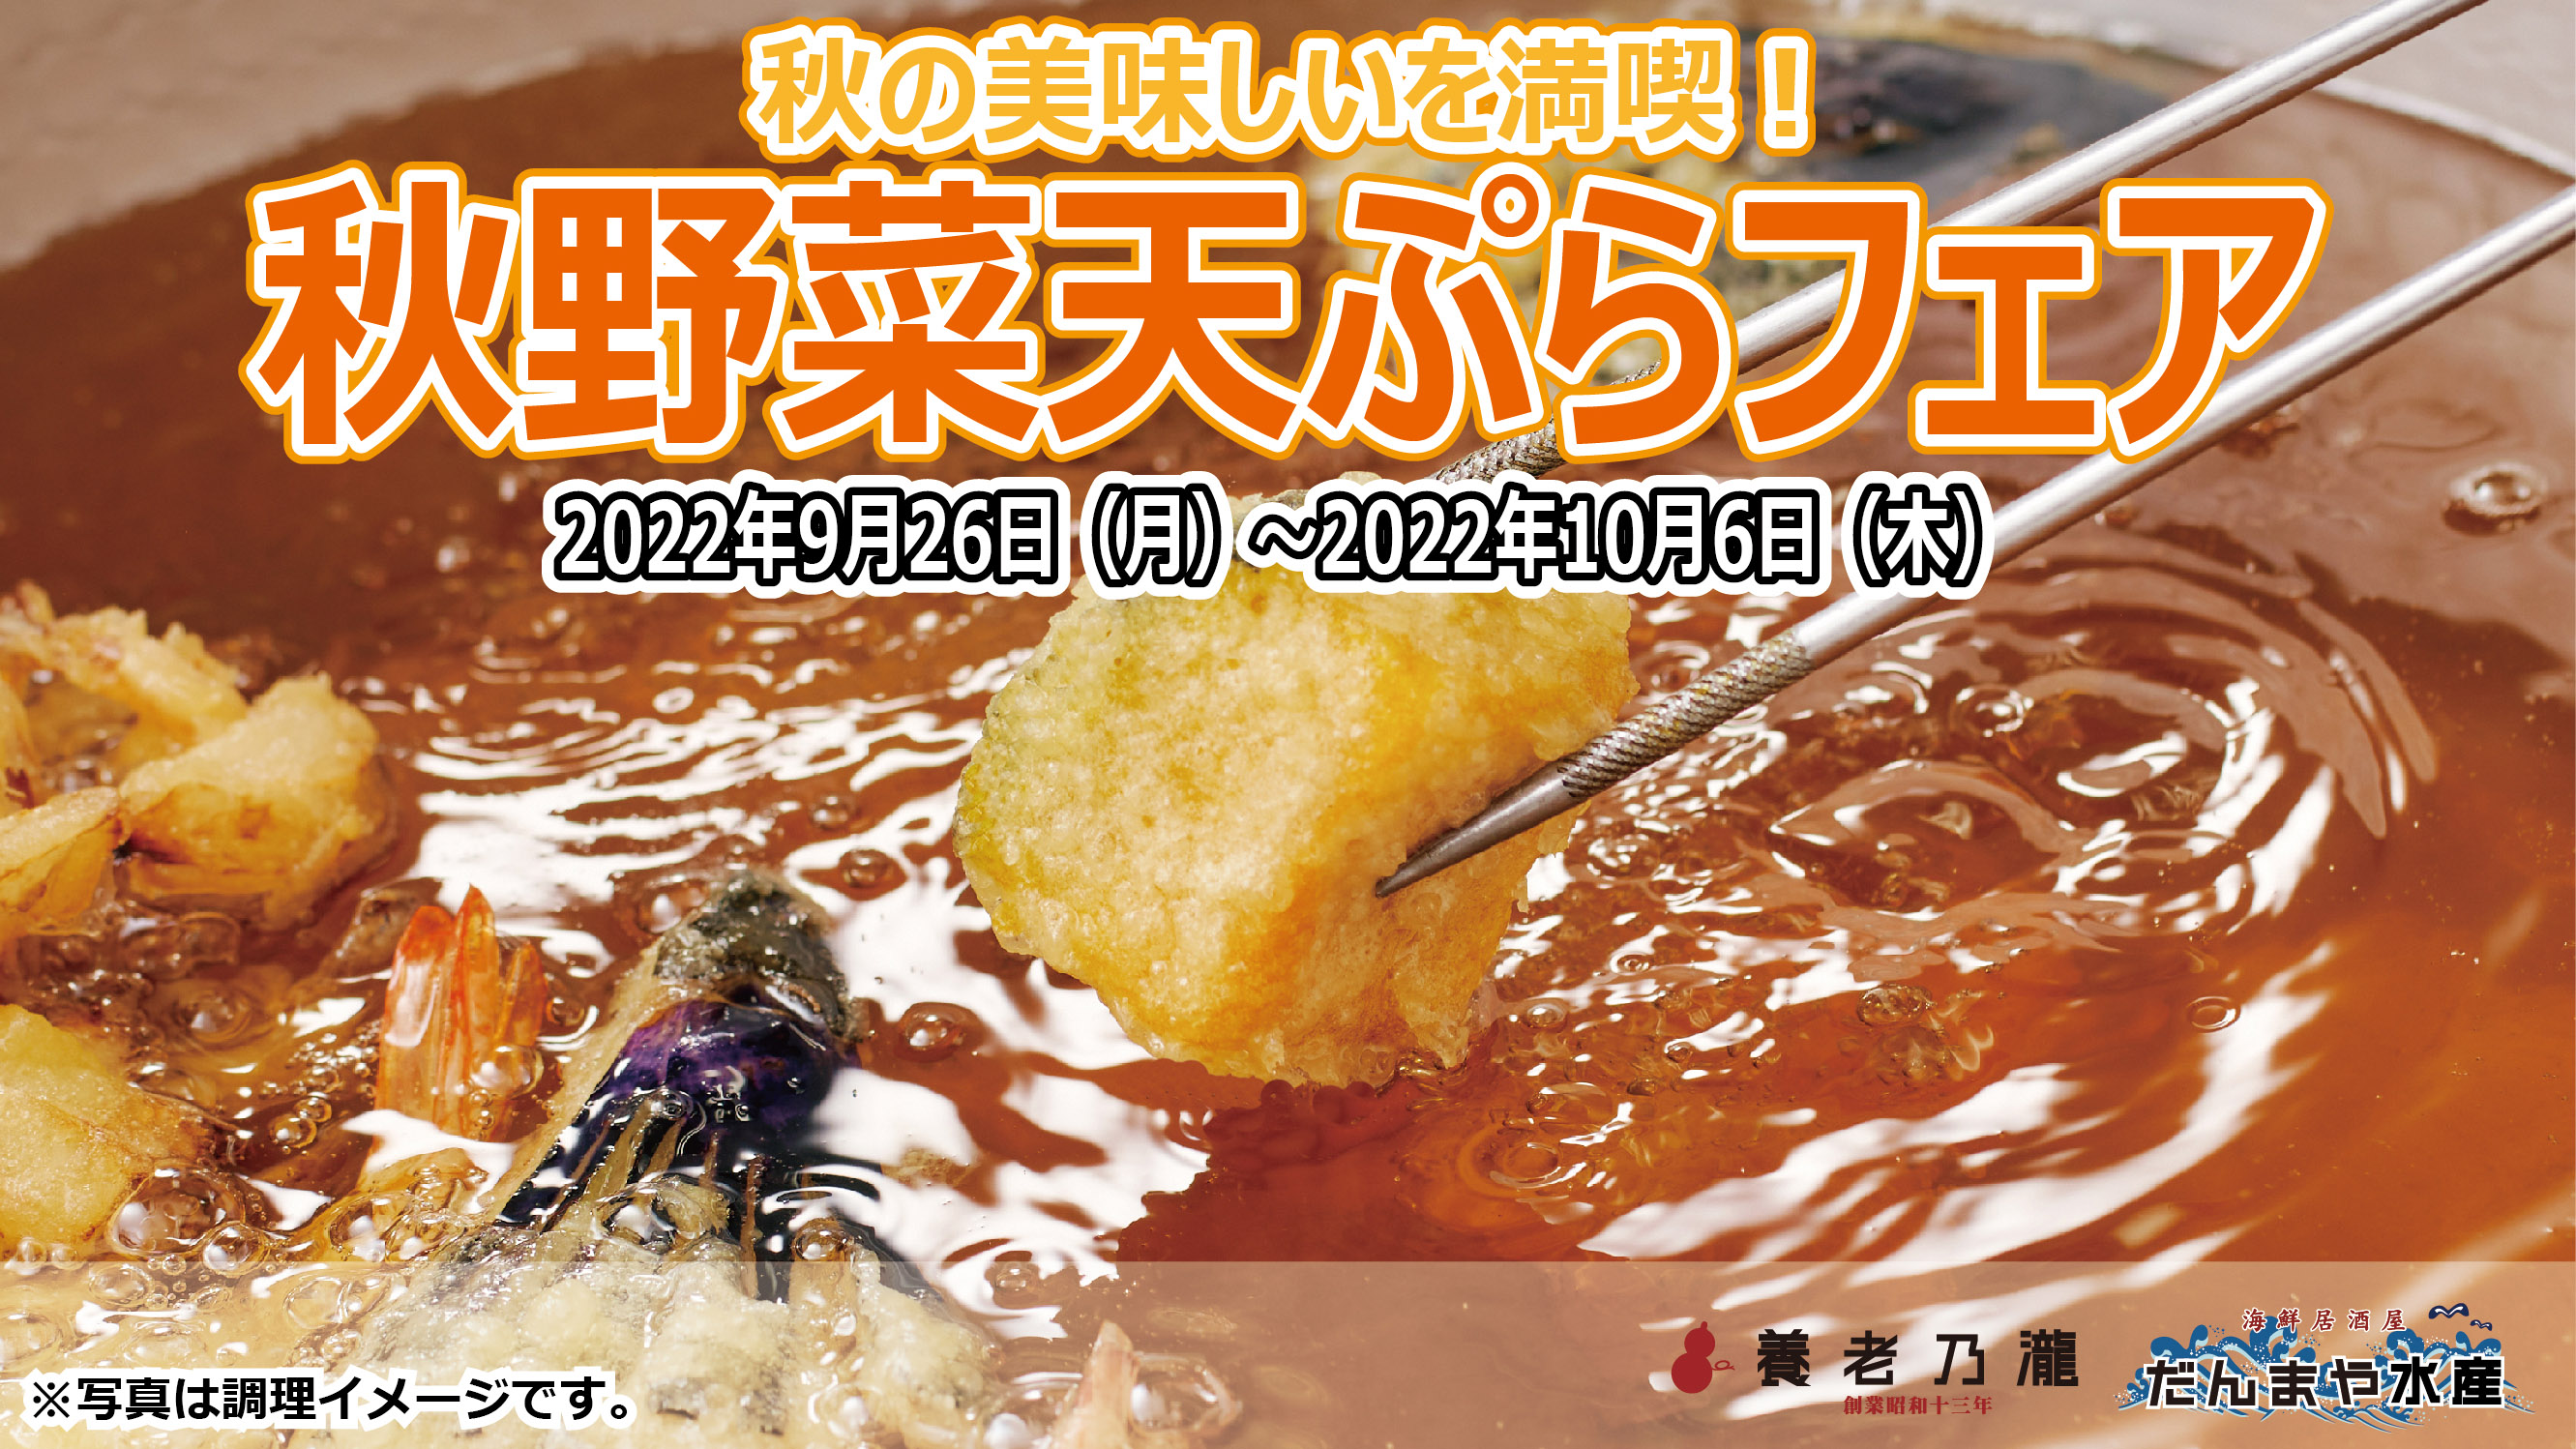 秋の美味しいを満喫 秋野菜天ぷらフェア 開催 養老乃瀧 株式会社のプレスリリース